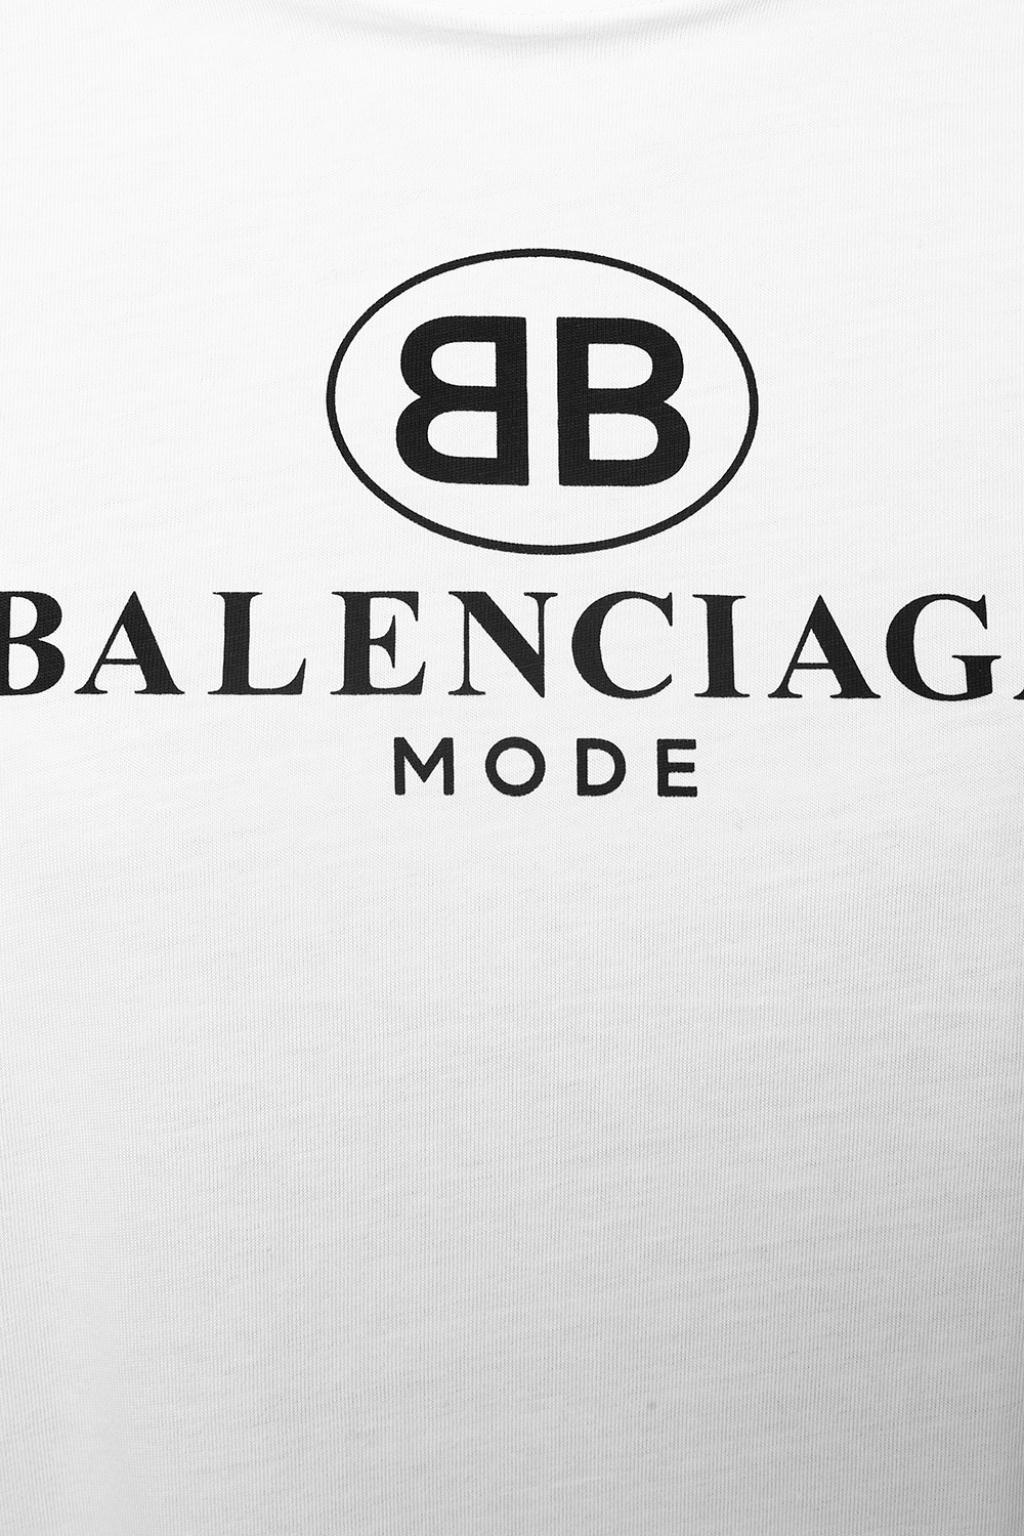 Chia sẻ 51 về balenciaga png logo mới nhất  cdgdbentreeduvn